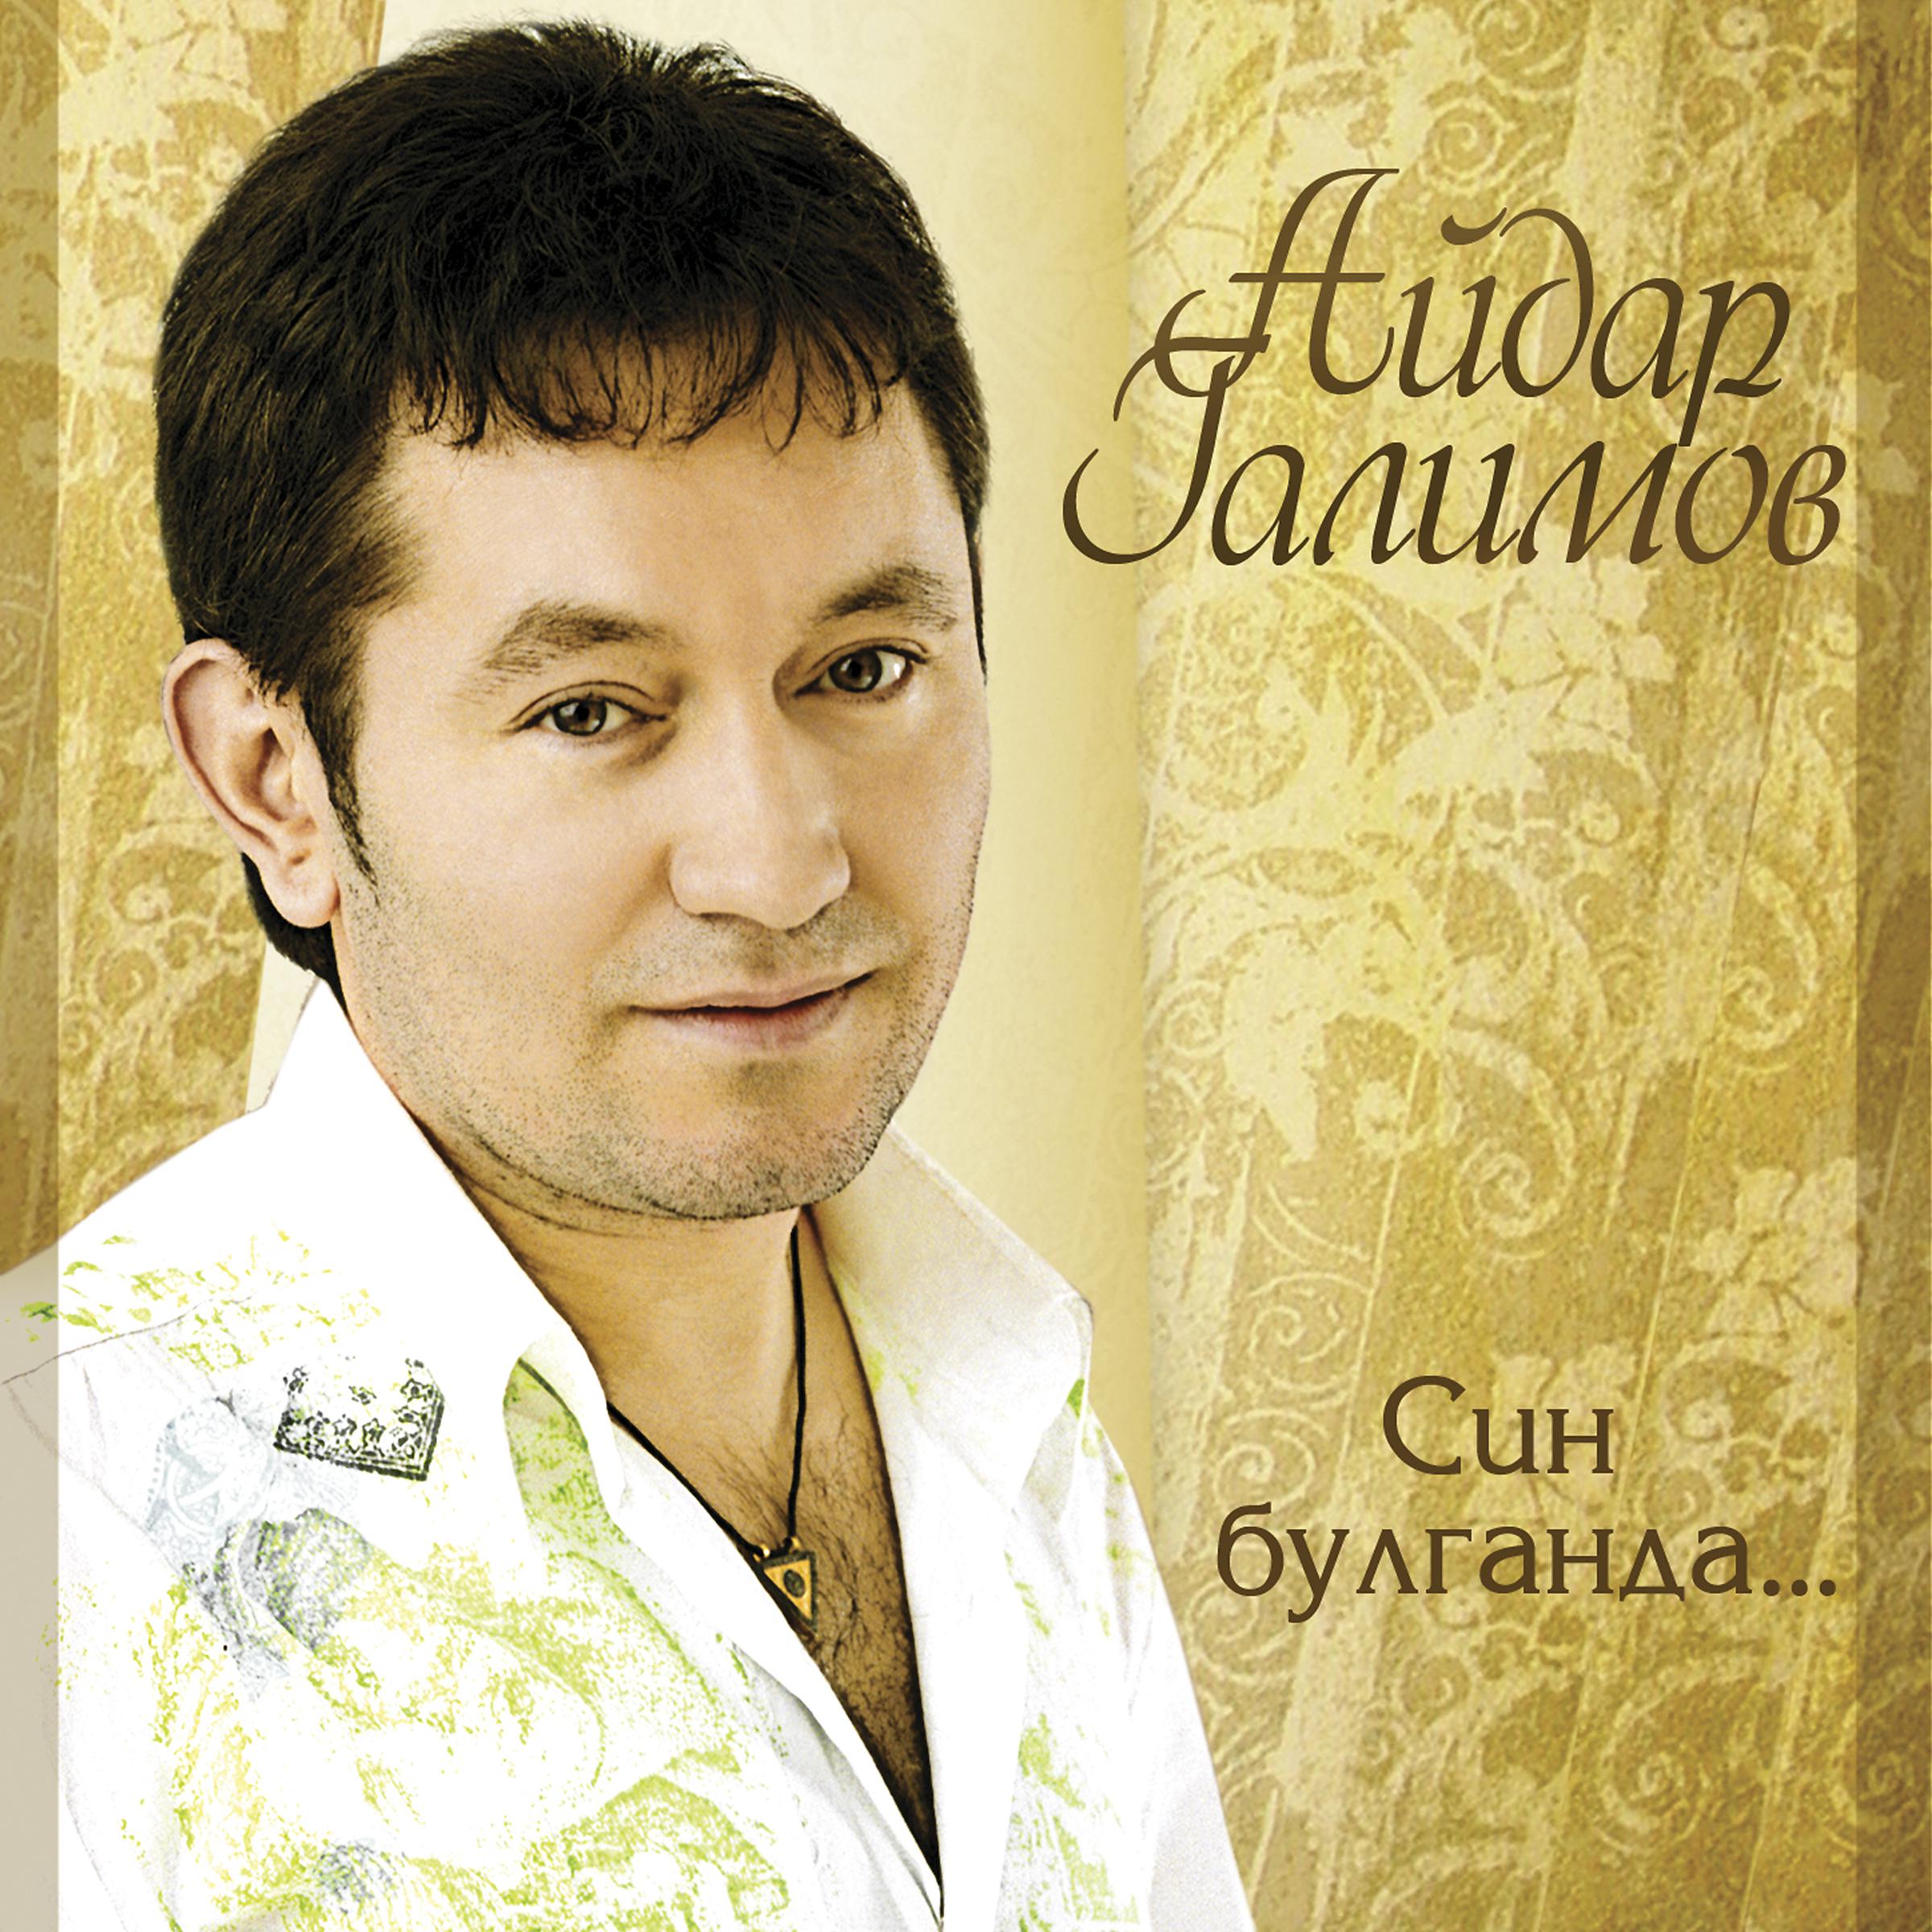 Татарский певец Ильдар Галимов. Слушать веселое татарском песни